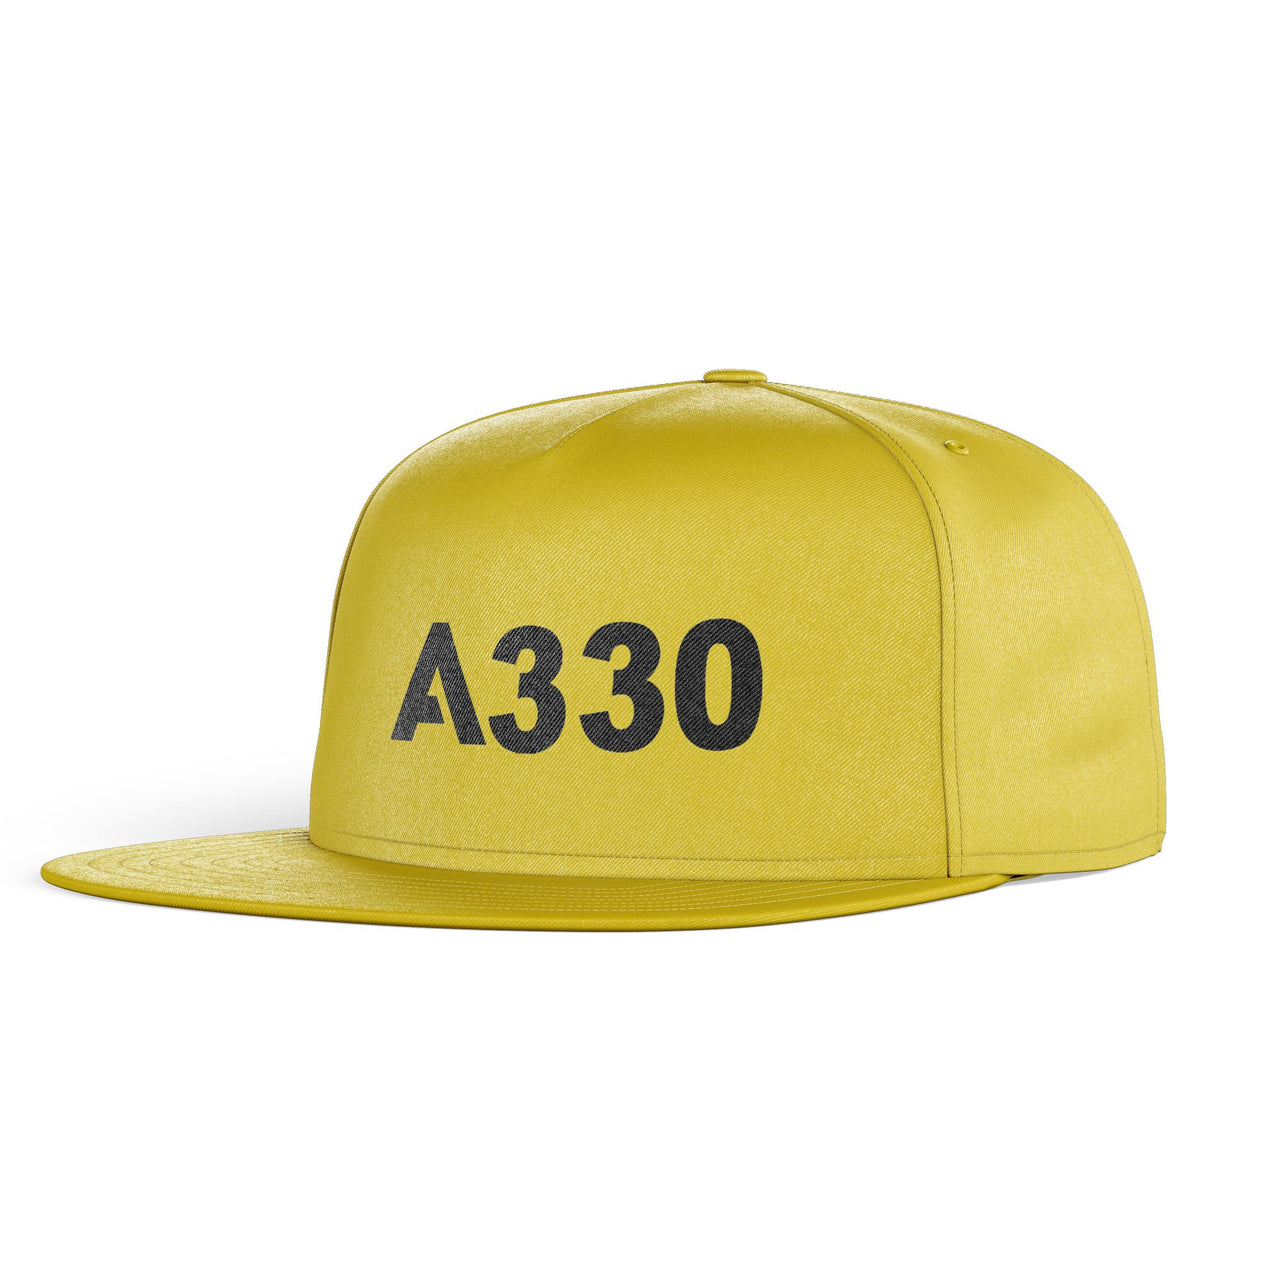 A330 Flat Text Designed Snapback Caps & Hats